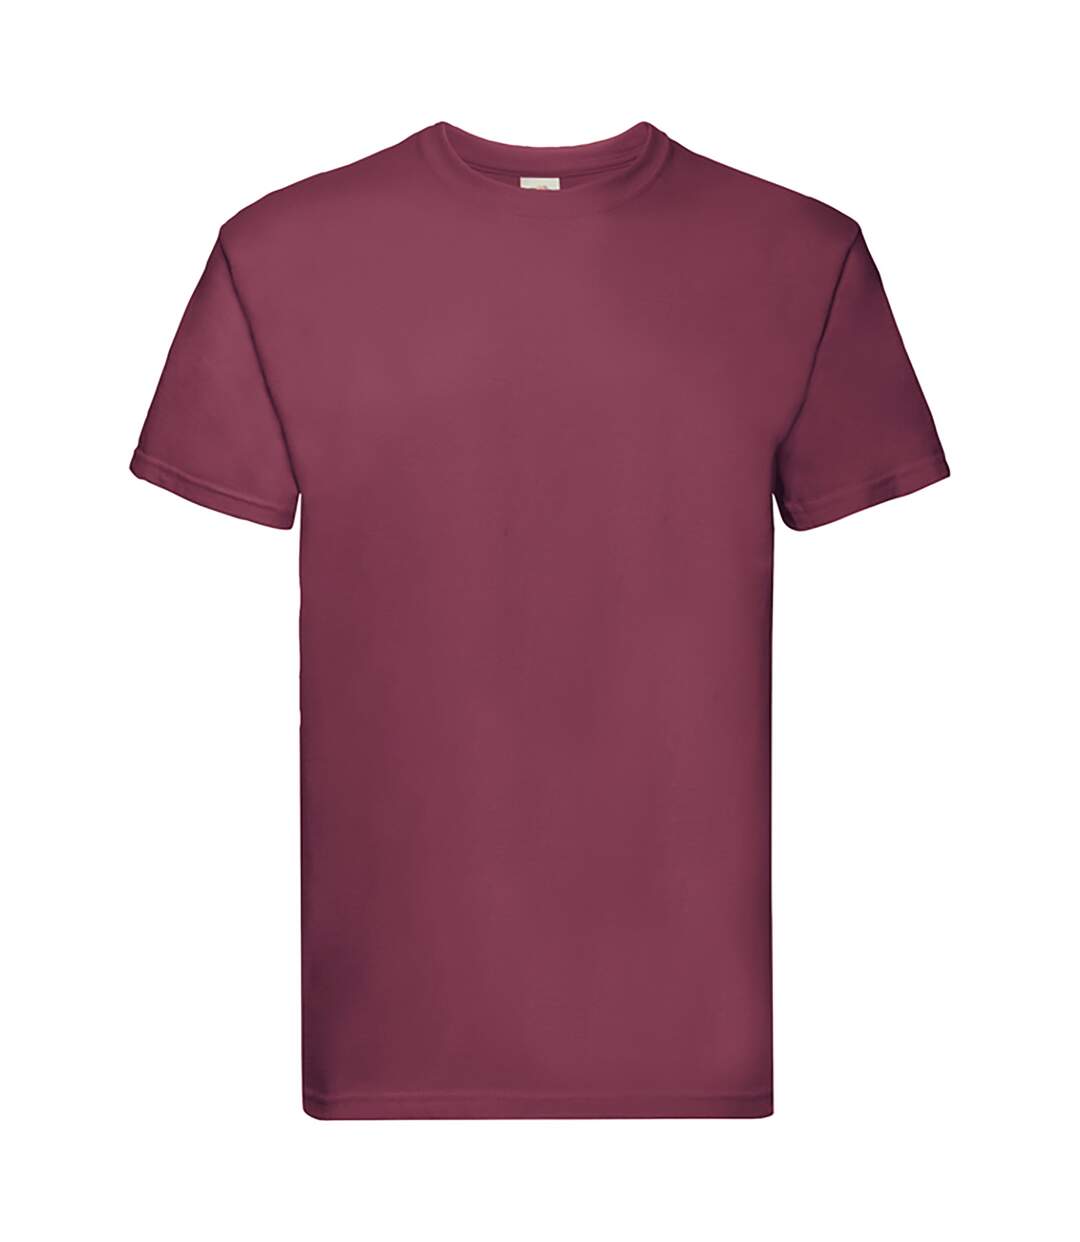 Fruit Of The Loom - T-shirt à manches courtes - Hommes (Bordeaux) - UTBC333